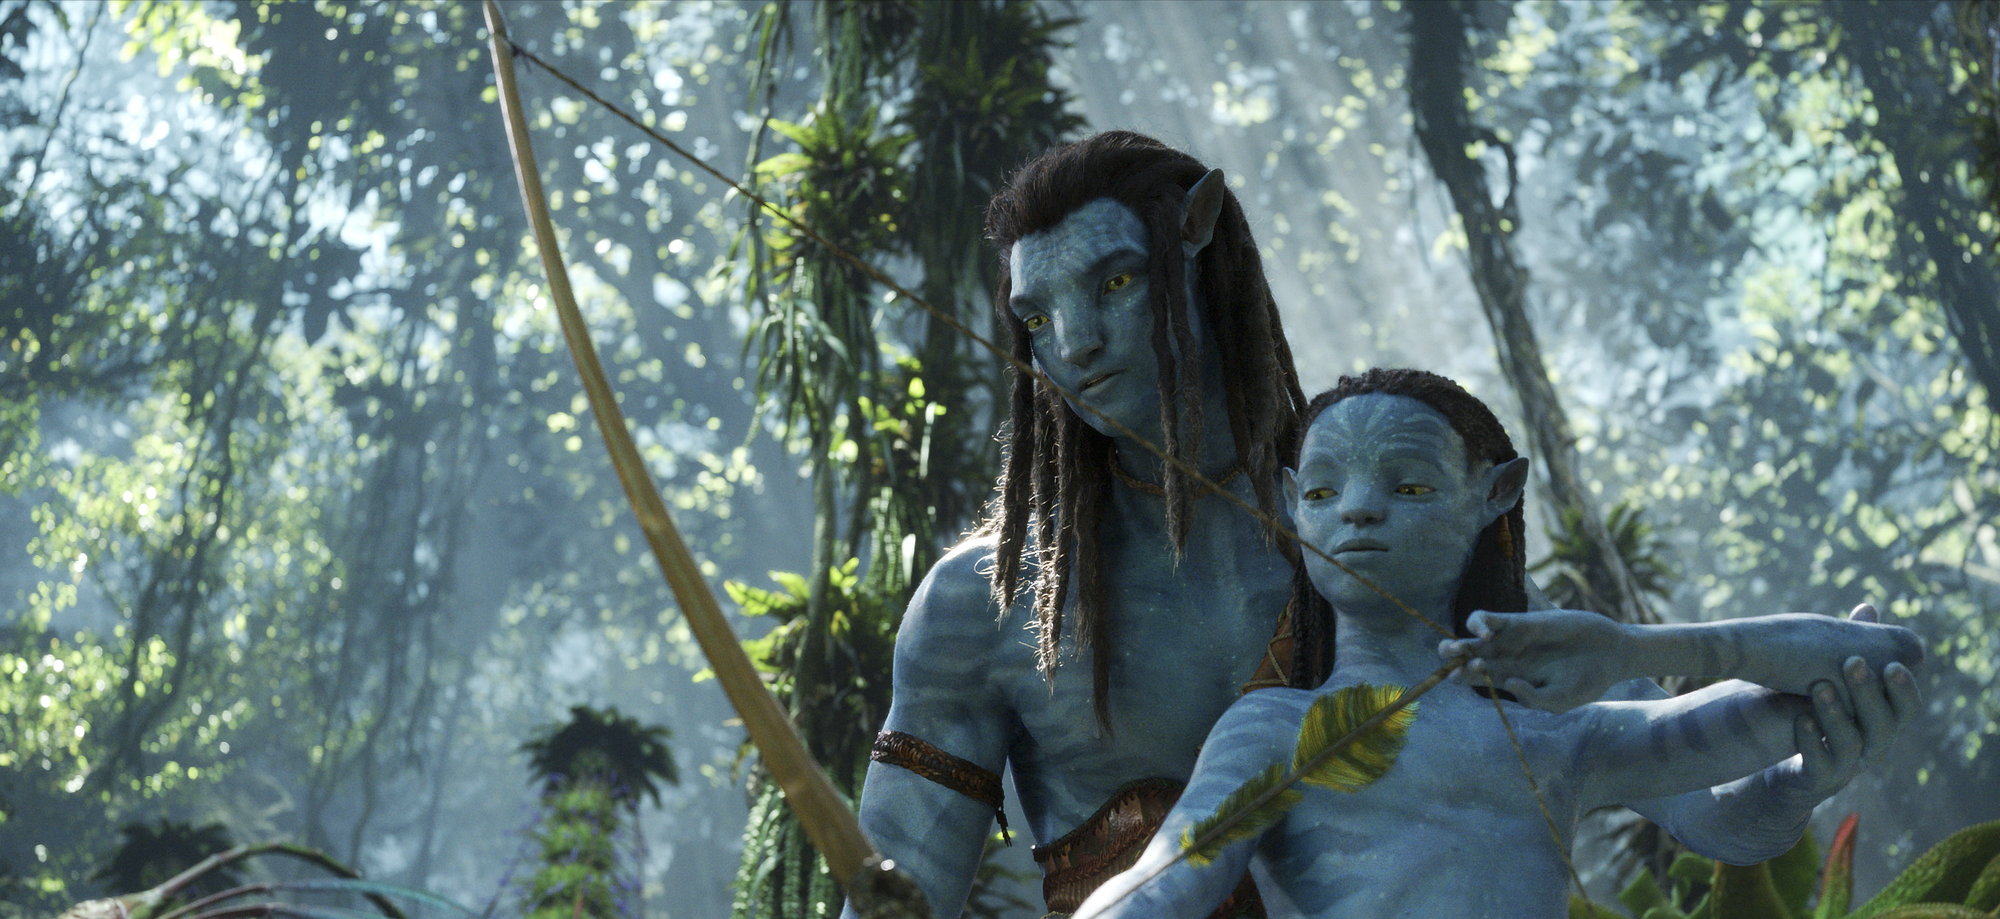 Avatar 2 Bí ẩn - một thế giới bí ẩn và đầy sức hấp dẫn đang chờ đón bạn. Lisa Gaming Avatar 2024 sẽ đưa bạn khám phá sự thật đằng sau những bí ẩn của thế giới này. Hãy tham gia cùng chúng tôi và trở thành người giải mã tài năng nhất của trò chơi này!